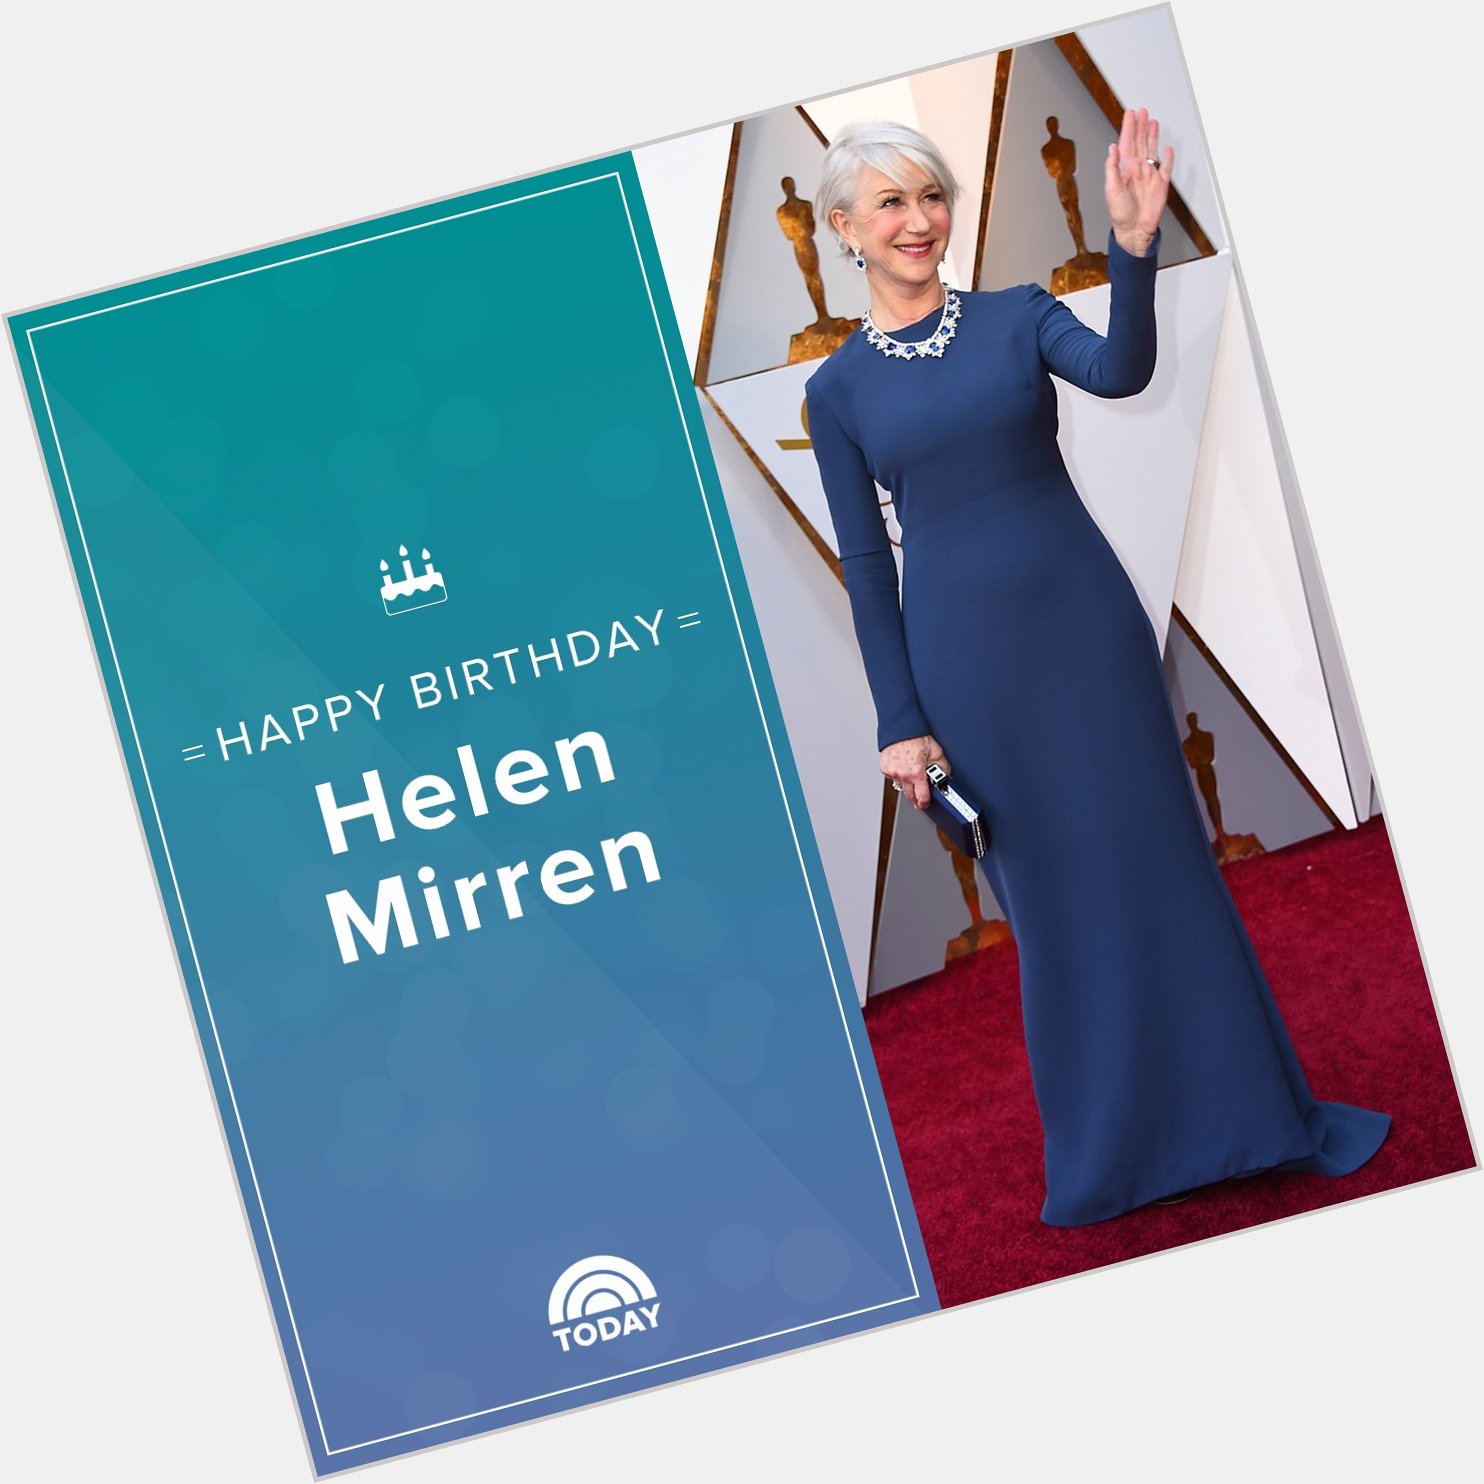 Happy birthday, Dame Helen Mirren! 